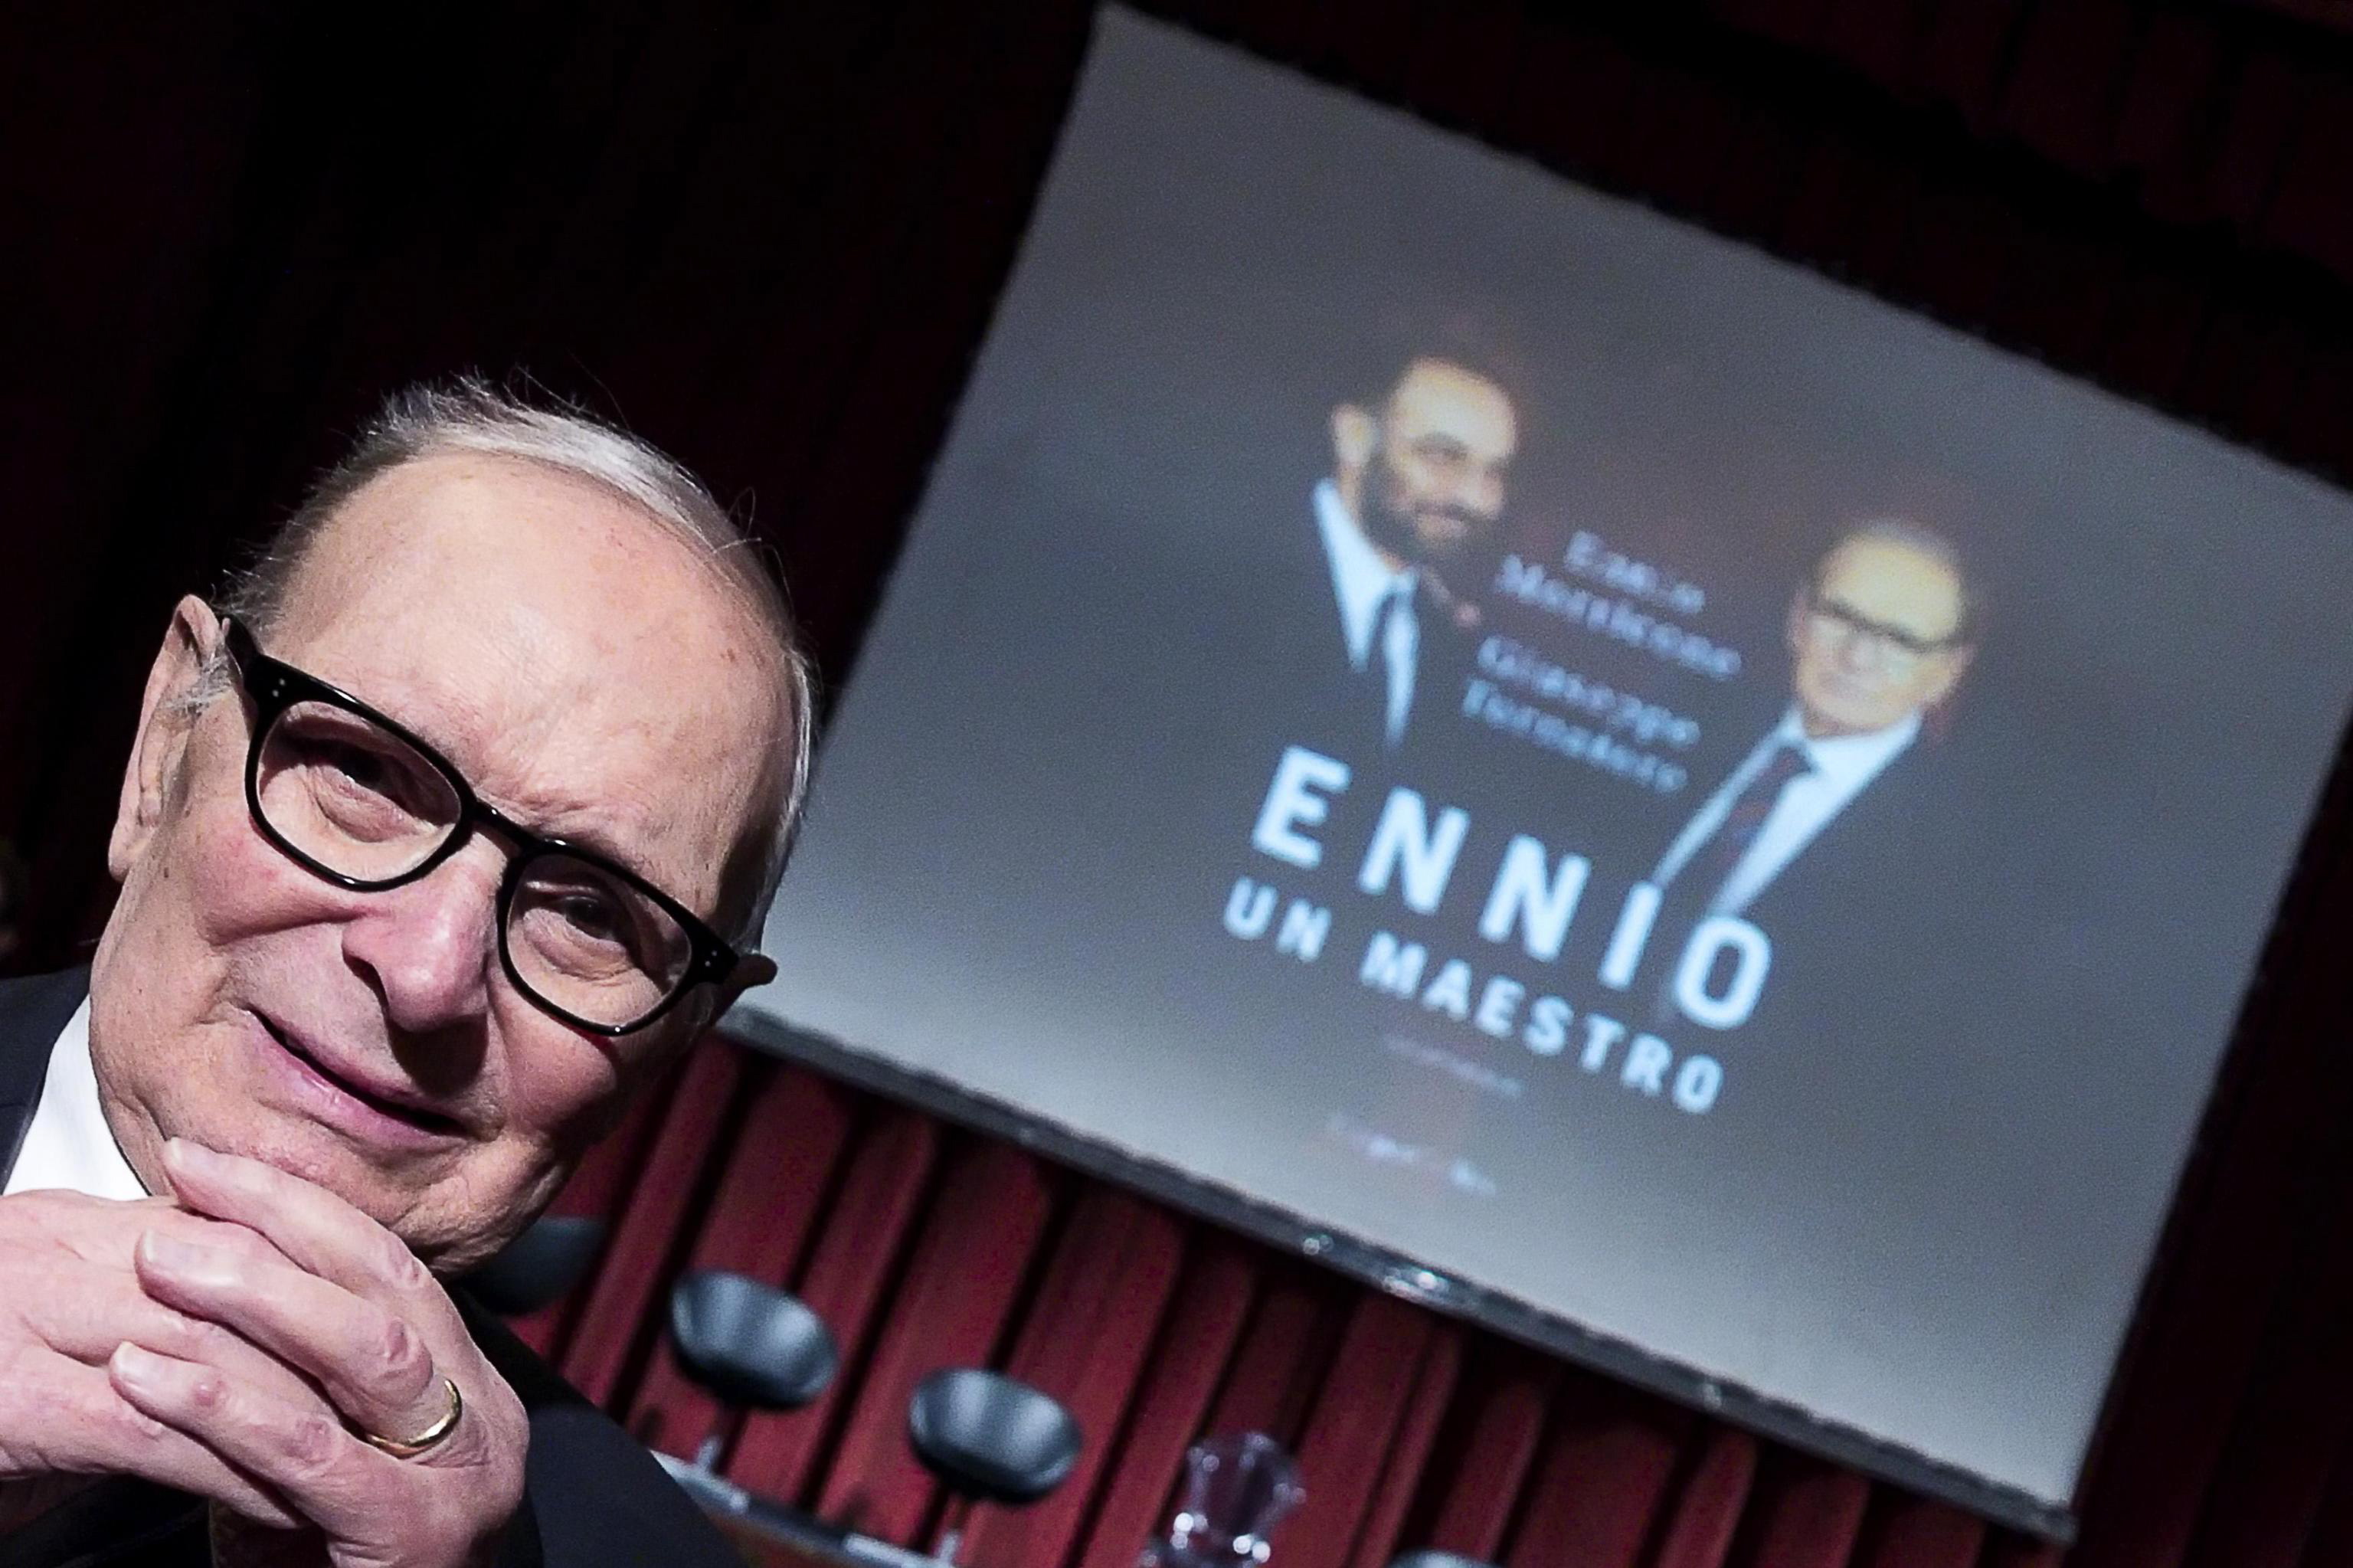 Een foto van Ennio Morricone bij de boekpresentatie Ennio, Un Maestro